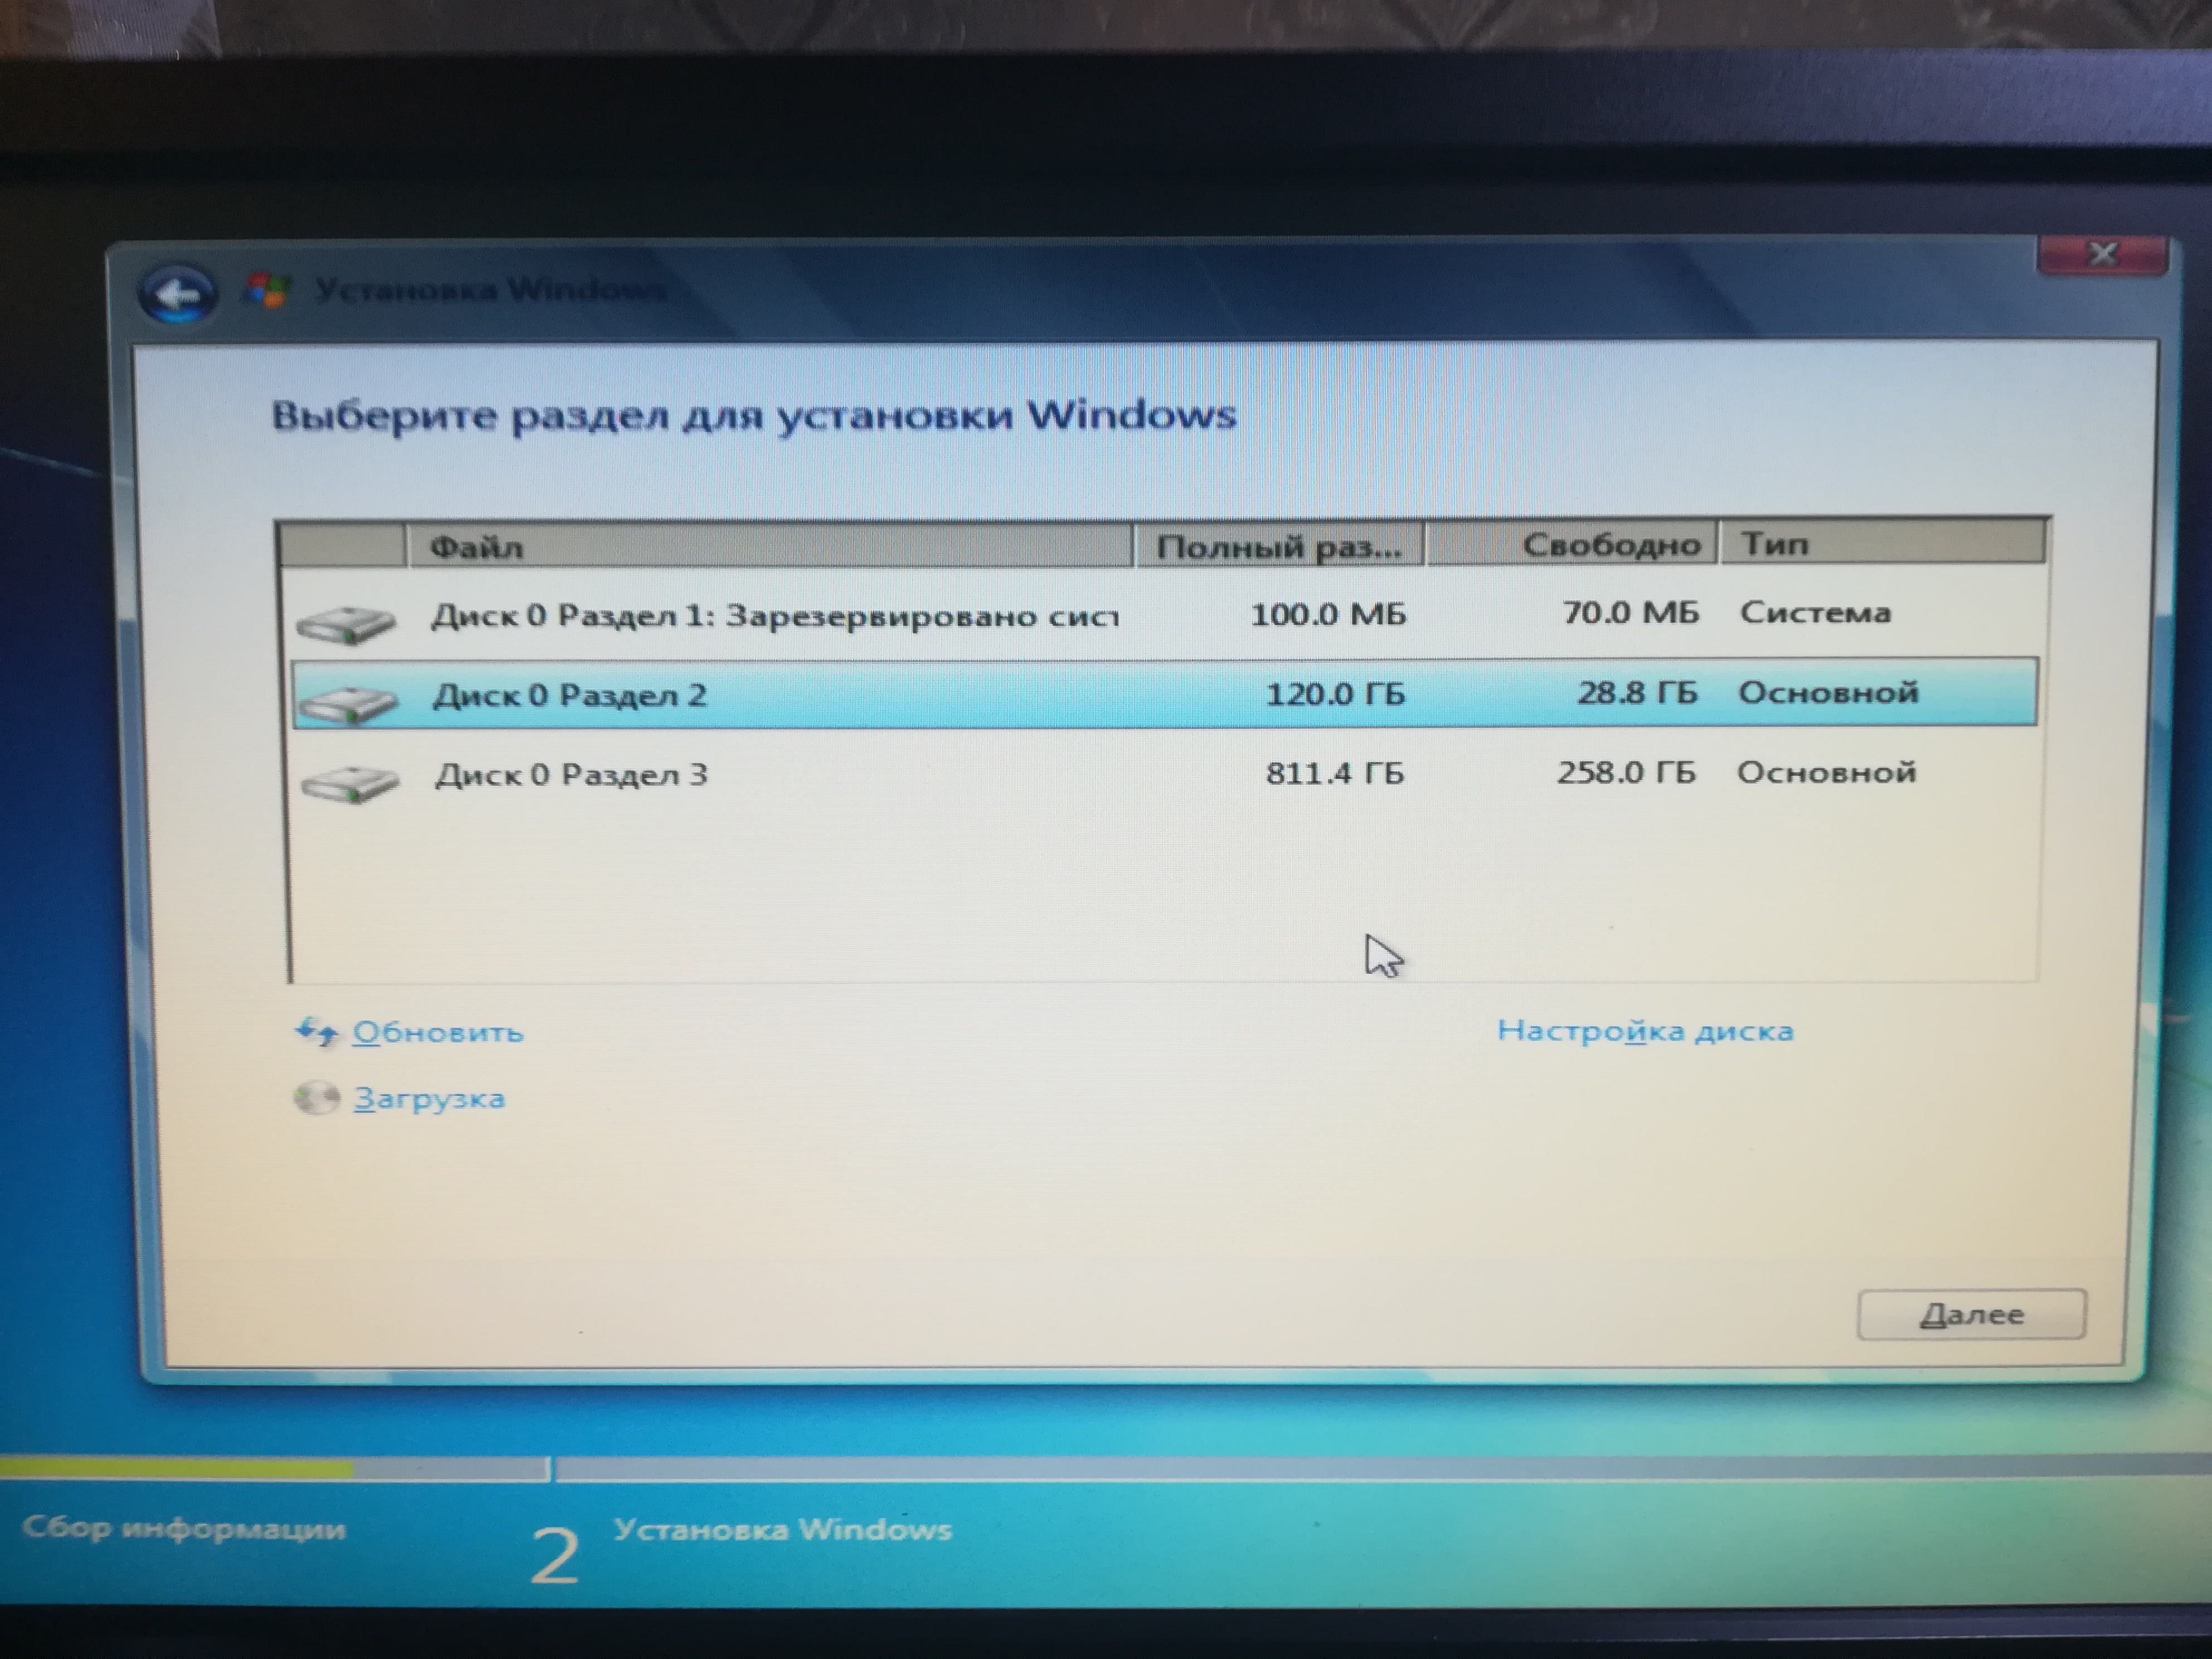 Пошаговая установка windows 7 на ноутбуке и компьютере